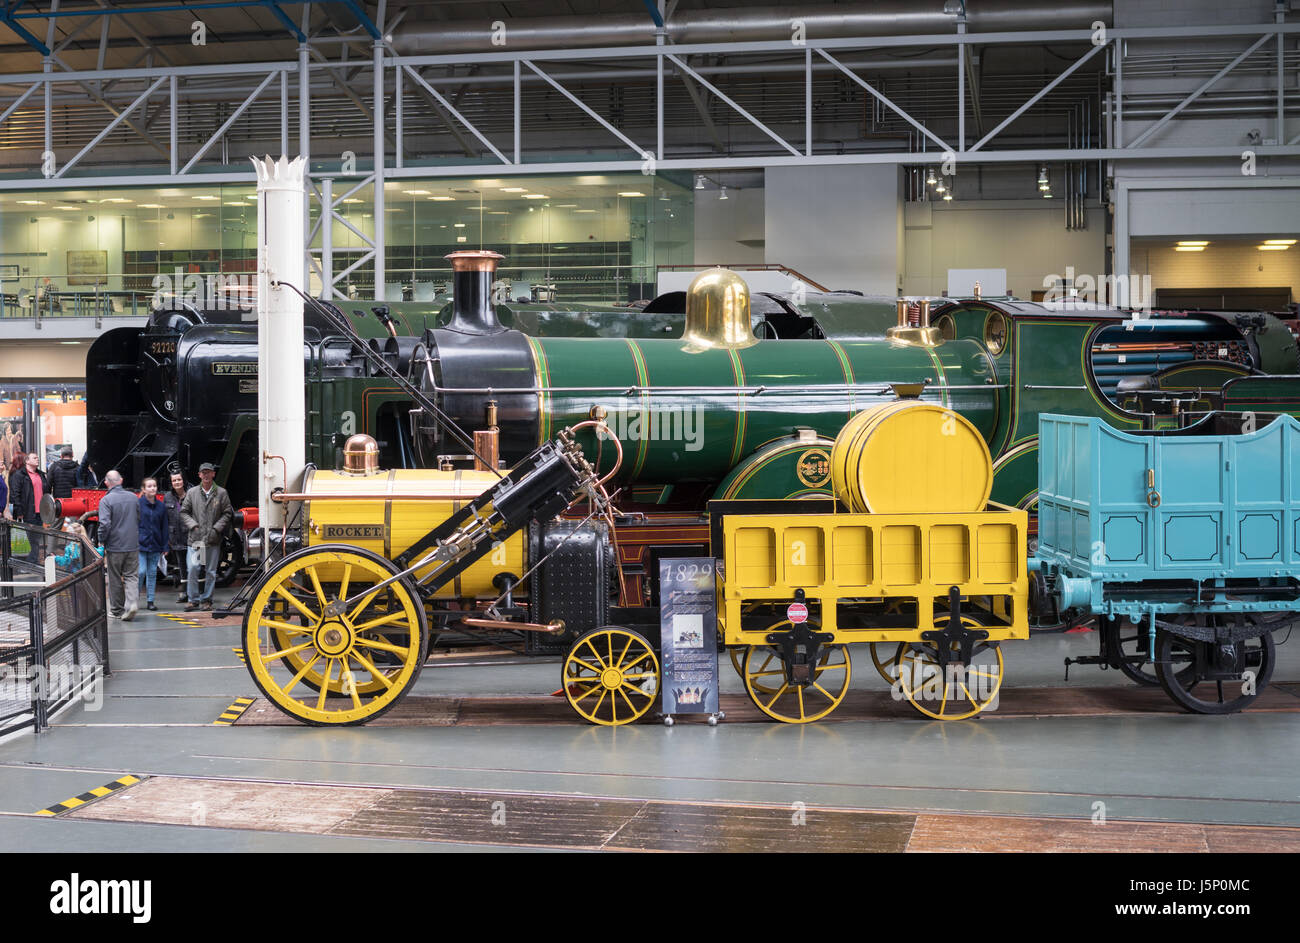 Réplique de la locomotive à vapeur 1829 Stephenson's Rocket au National Railway Museum, York, England, UK Banque D'Images